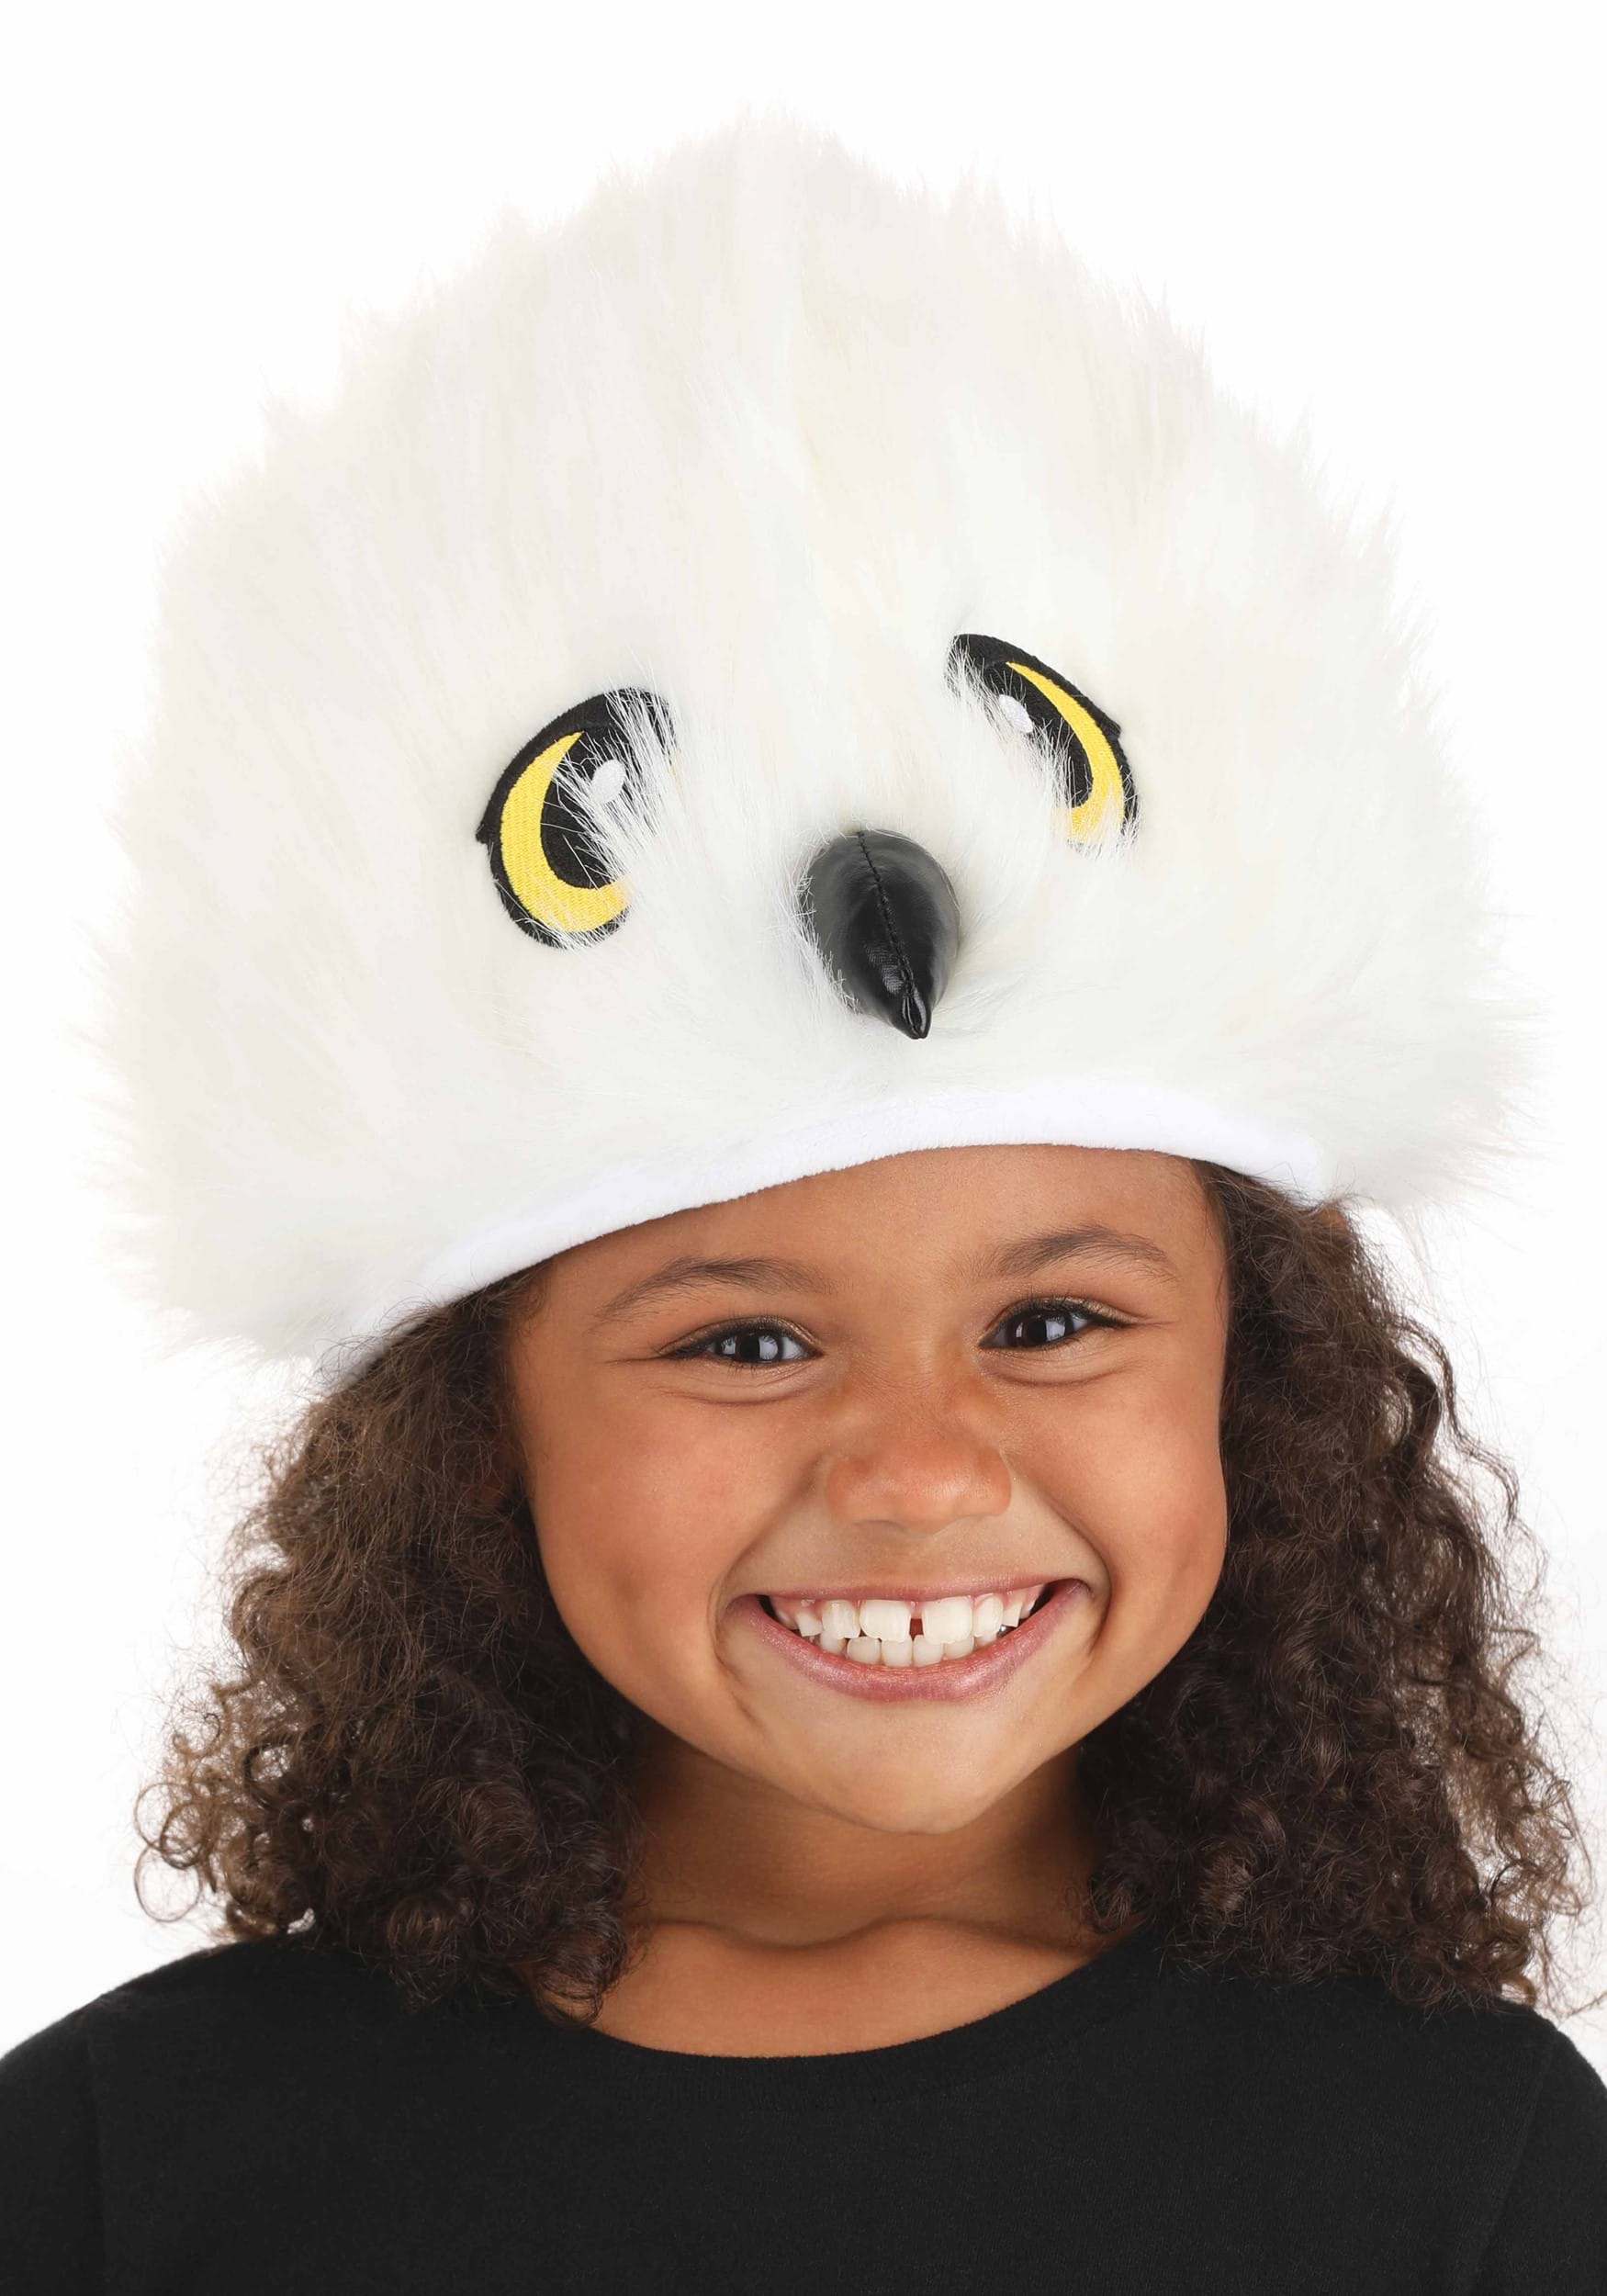 Infant Plush Eagle Costume